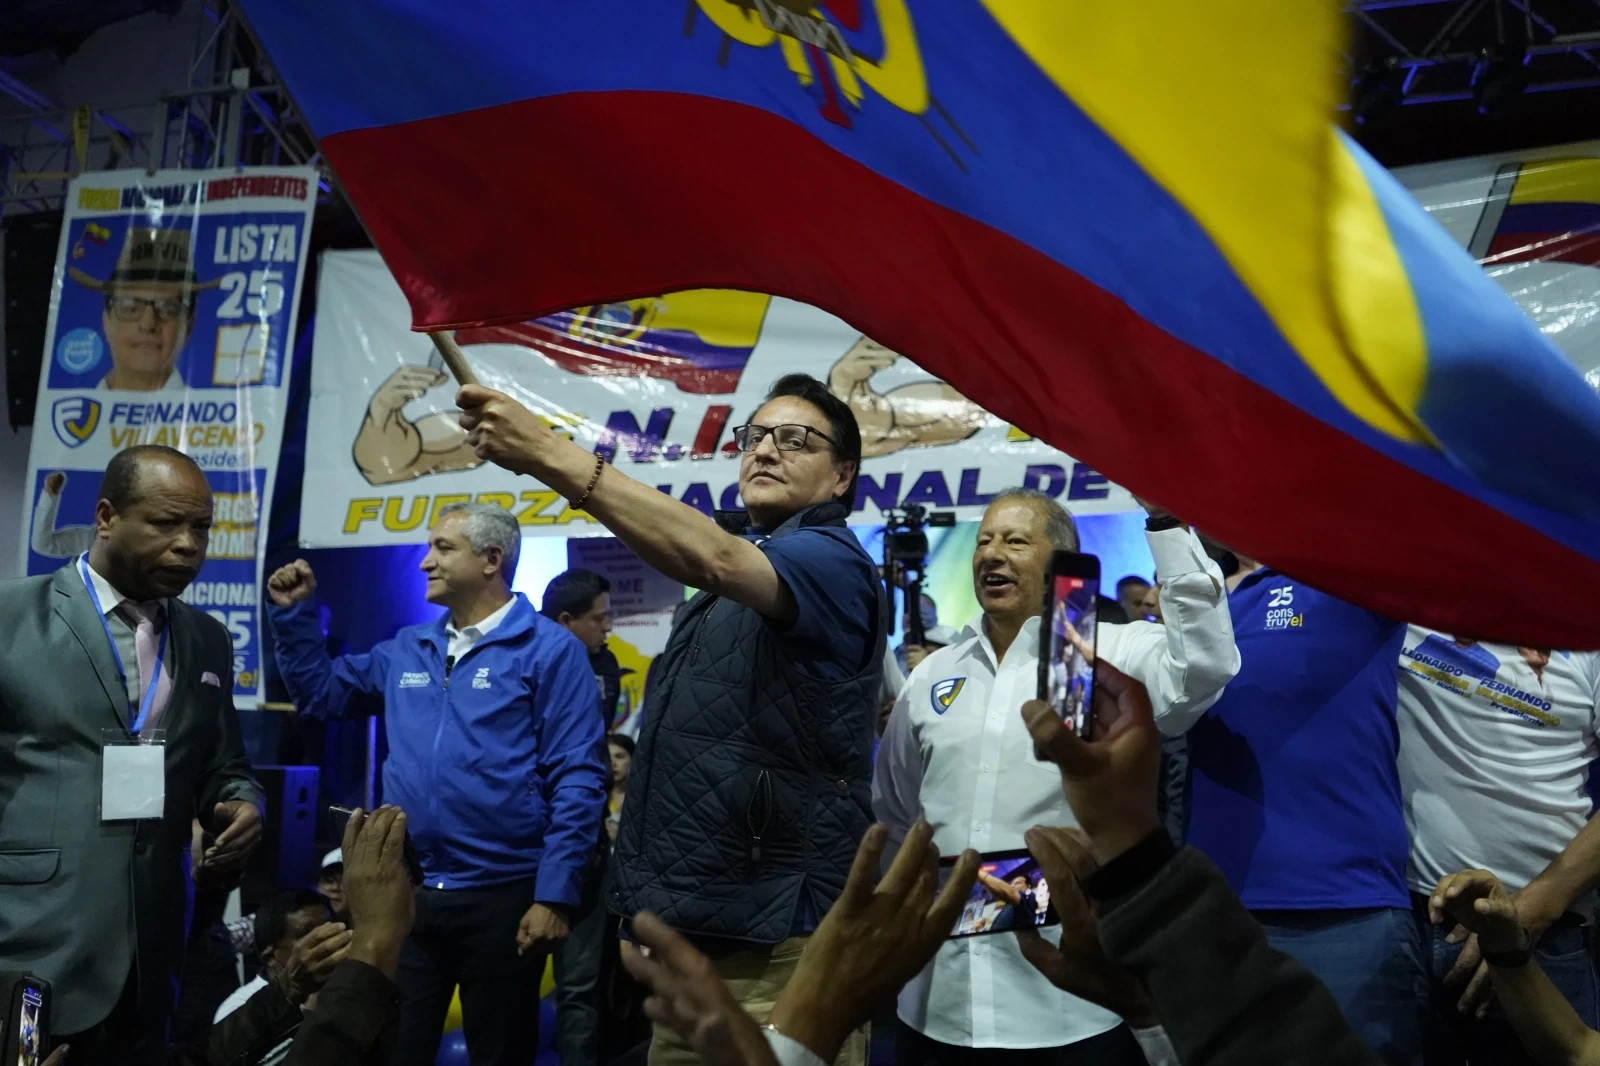 Ecuador ban bố tình trạng khẩn cấp sau vụ ám sát chấn động - 1